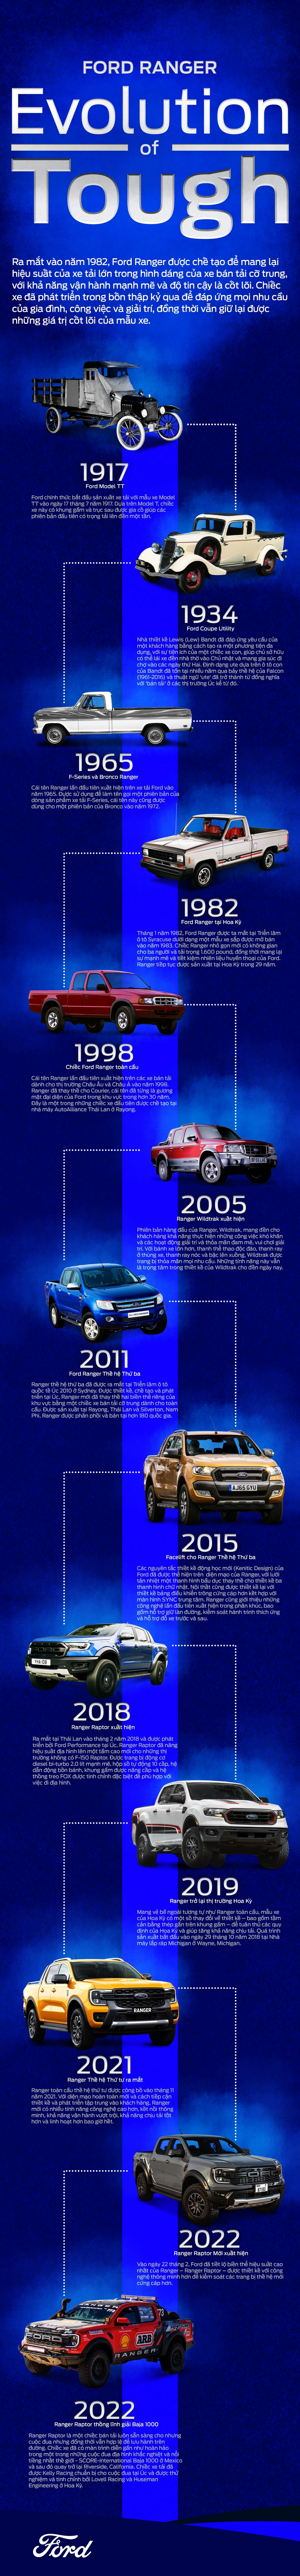 Sự phát triển của Ford Ranger qua từng thời kỳ